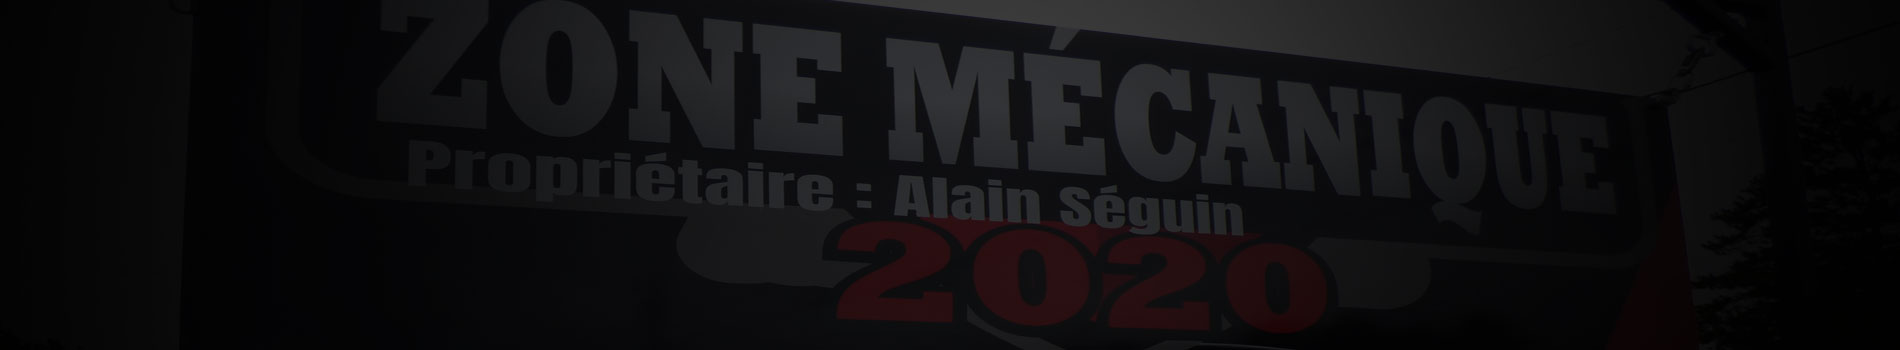 Zone Mécanique 2020 - Nous joindre